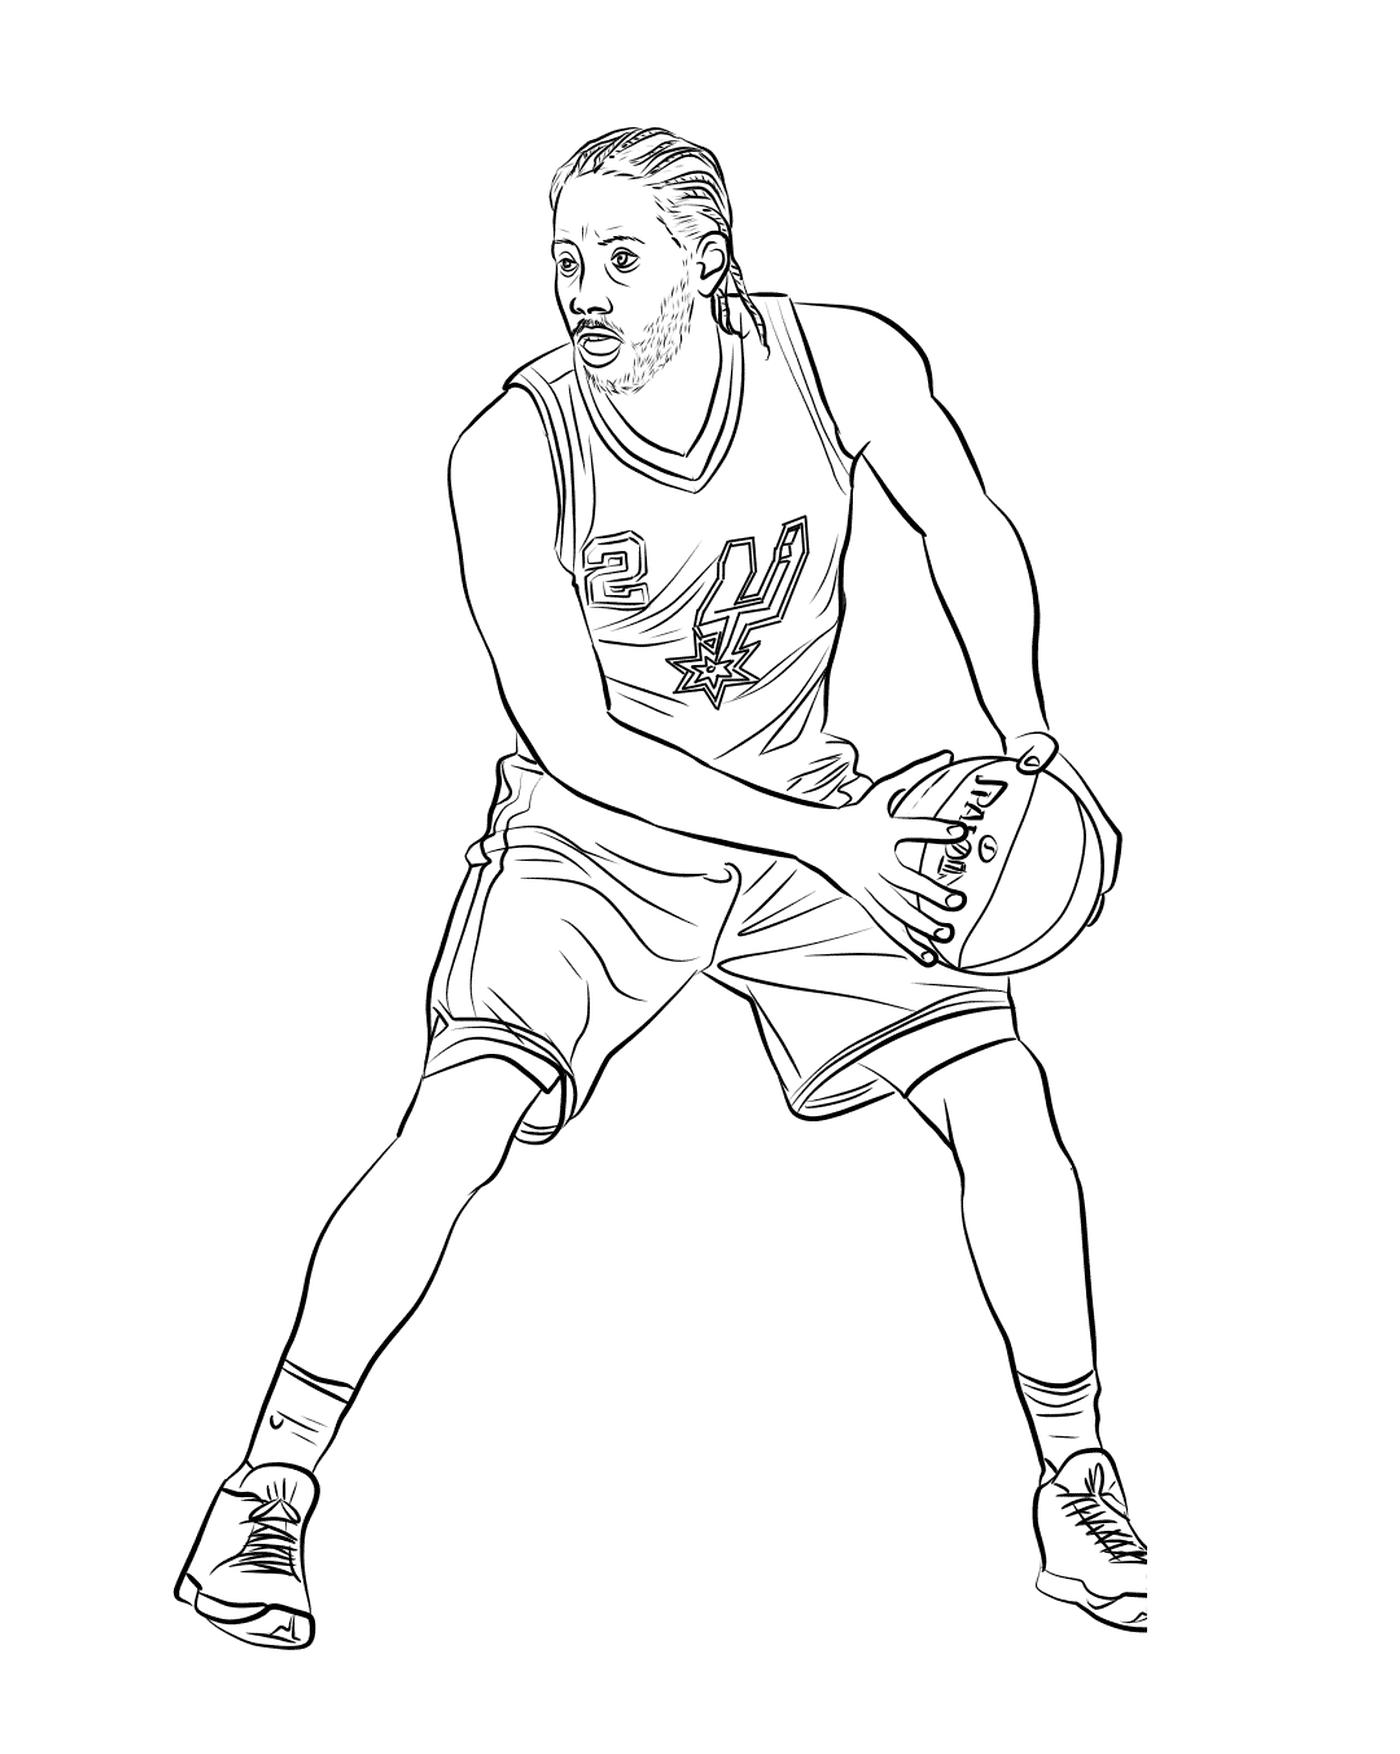  Kawhi Leonard, basketball player 